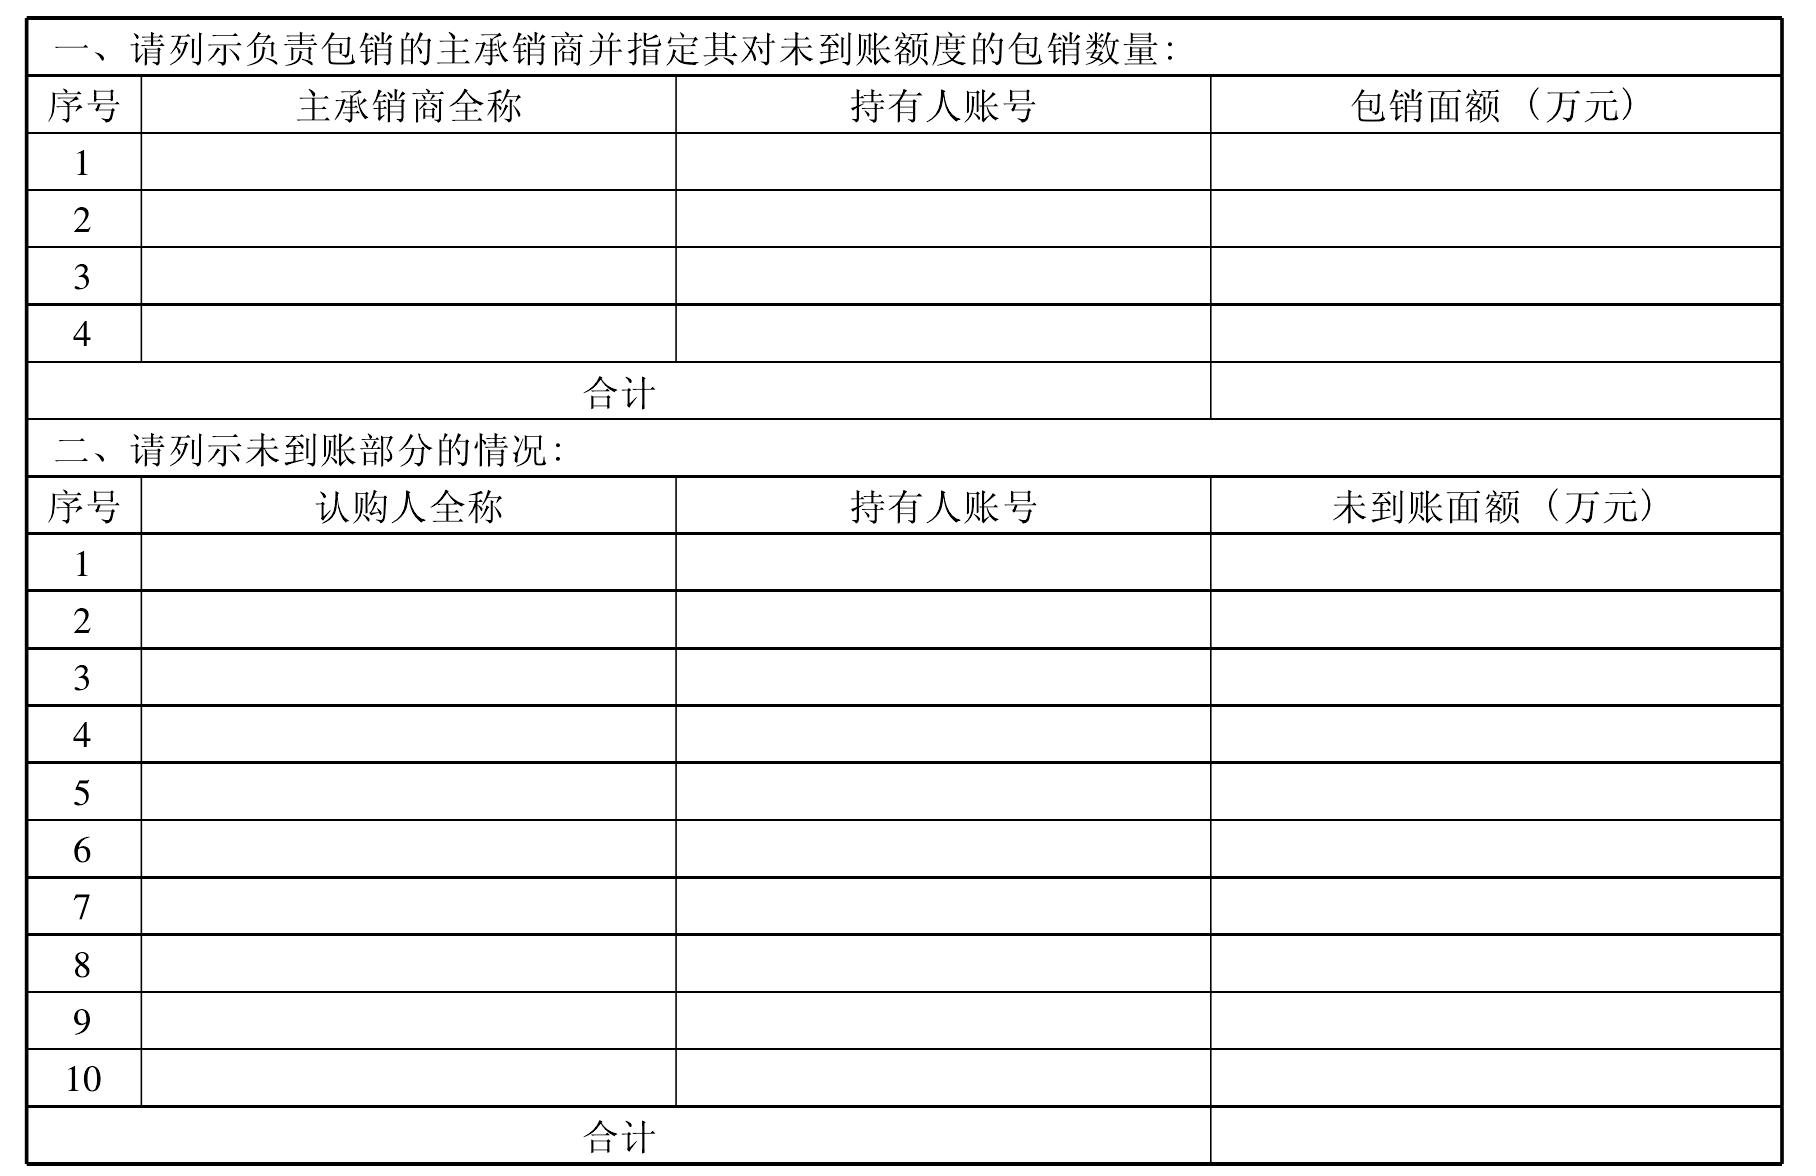 第五节 上海清算所债务融资工具工作流程